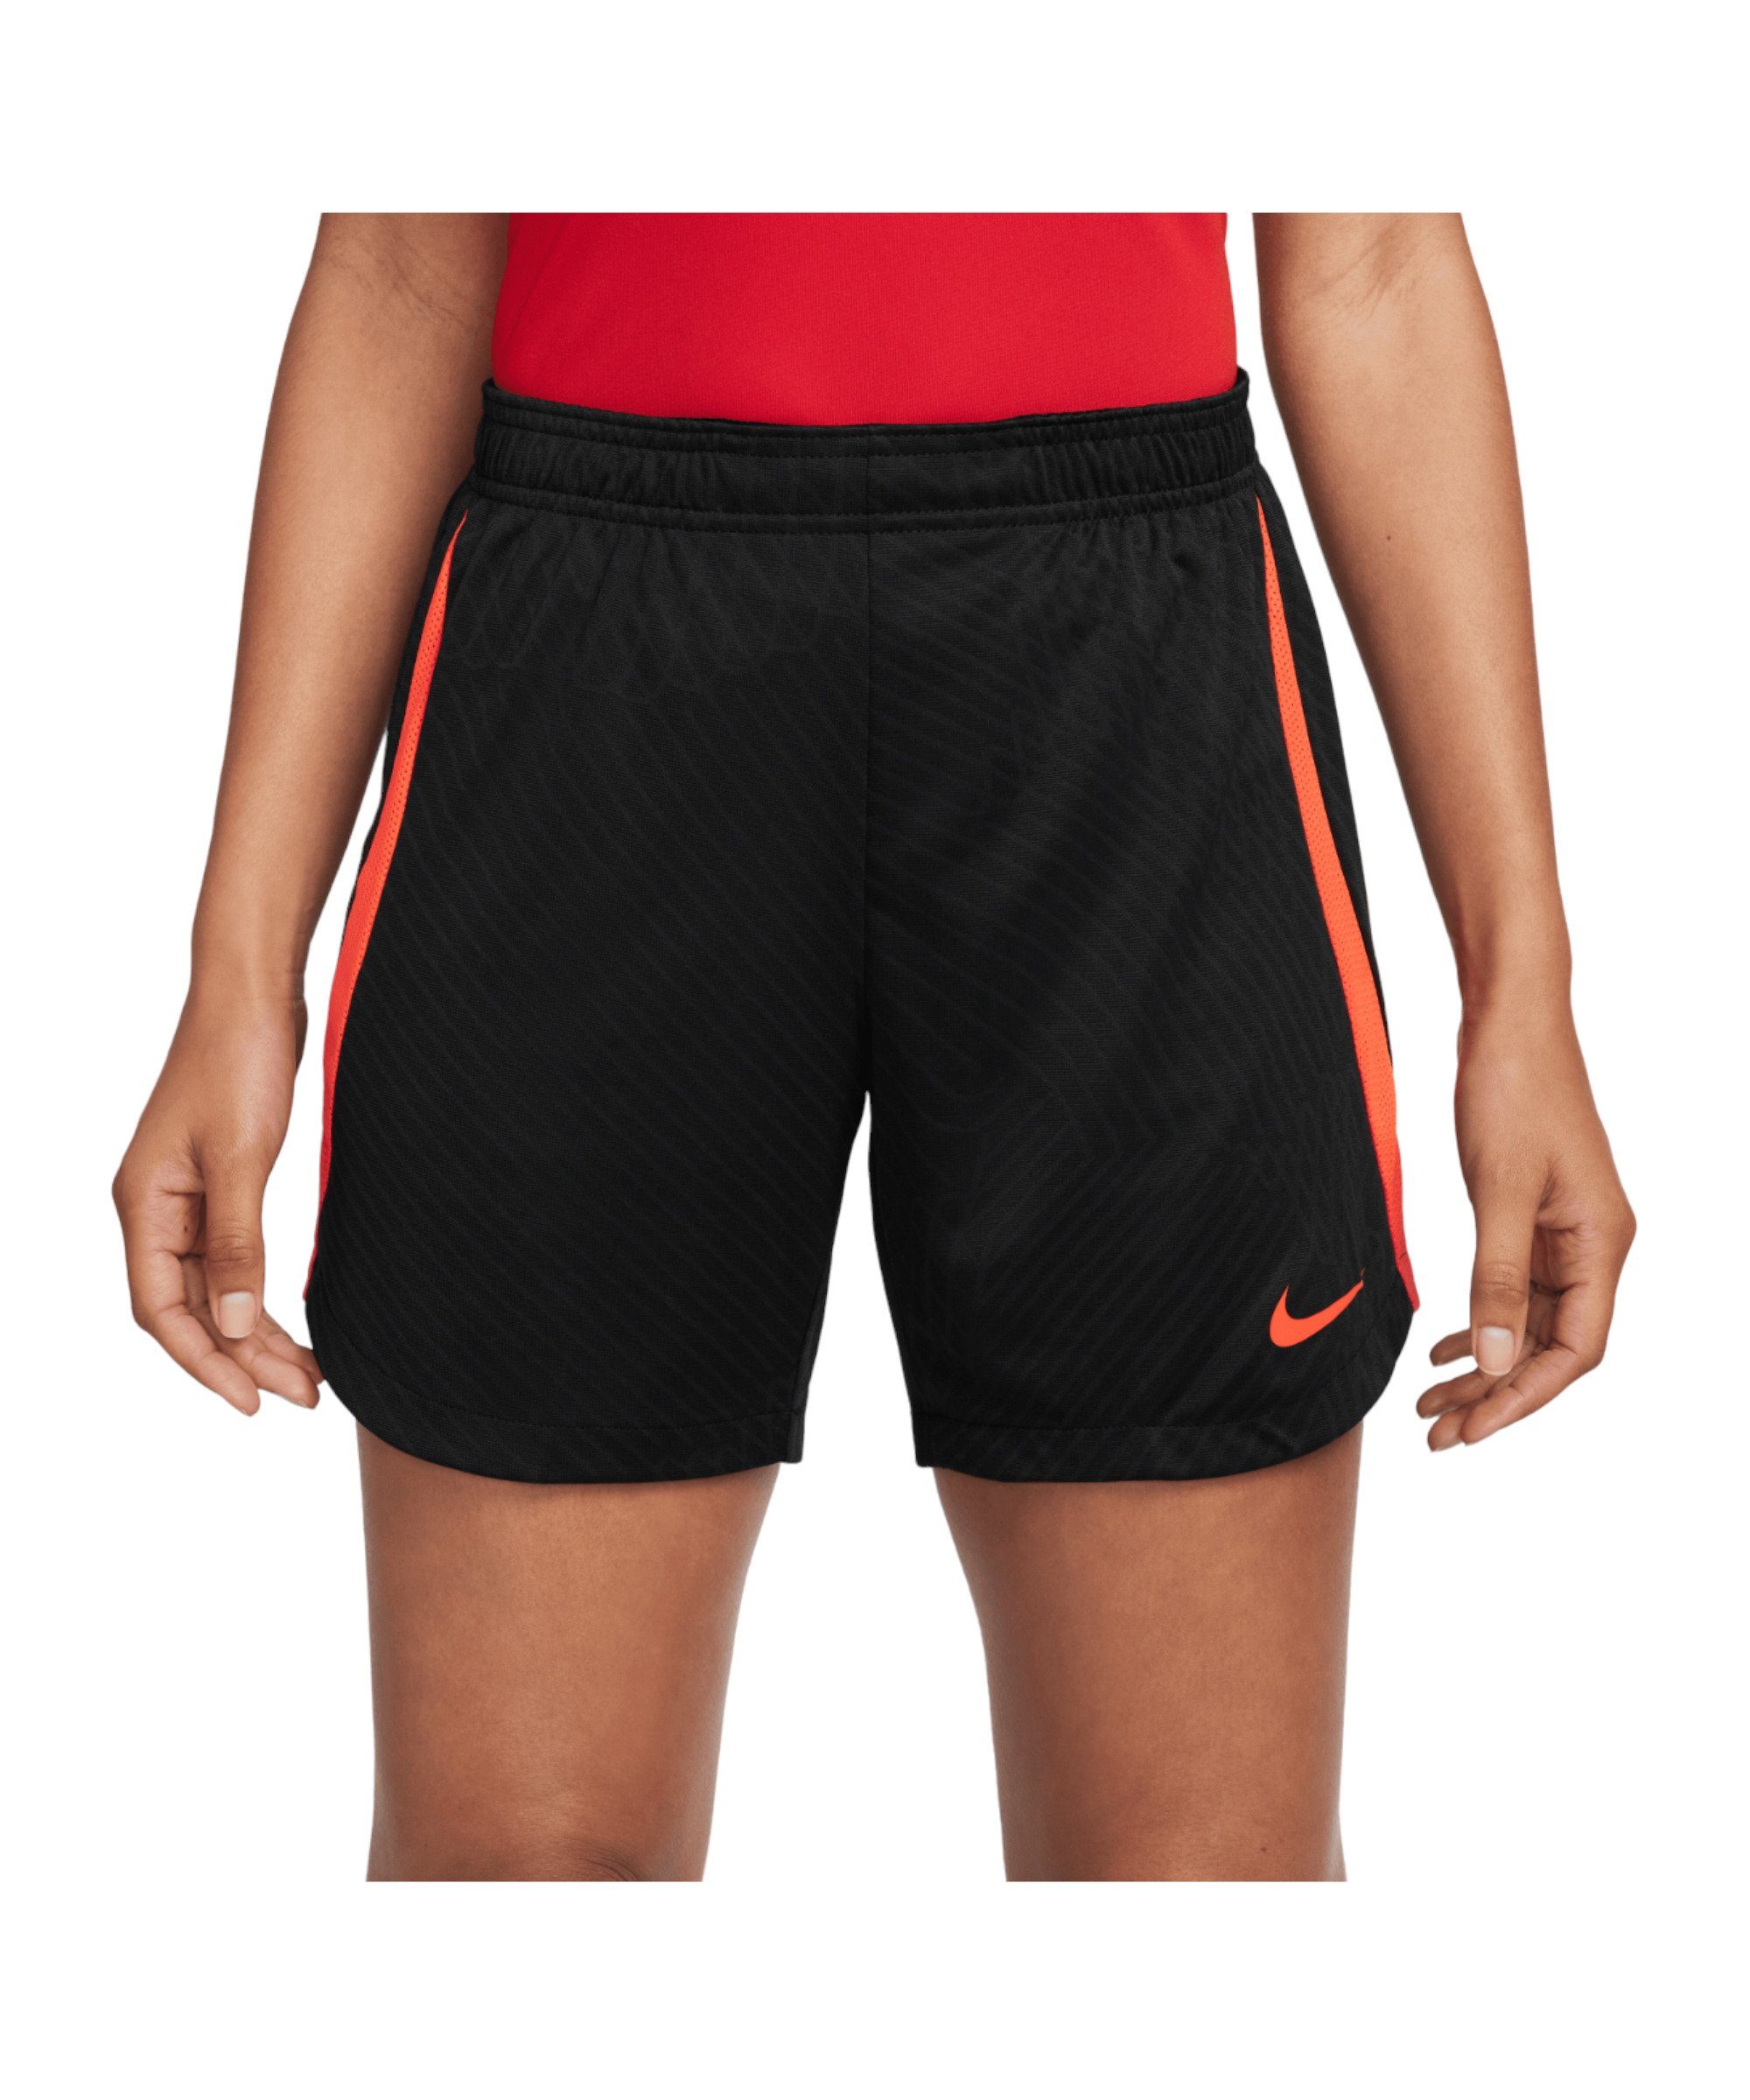 Sporthose Damen Strike Nike Short